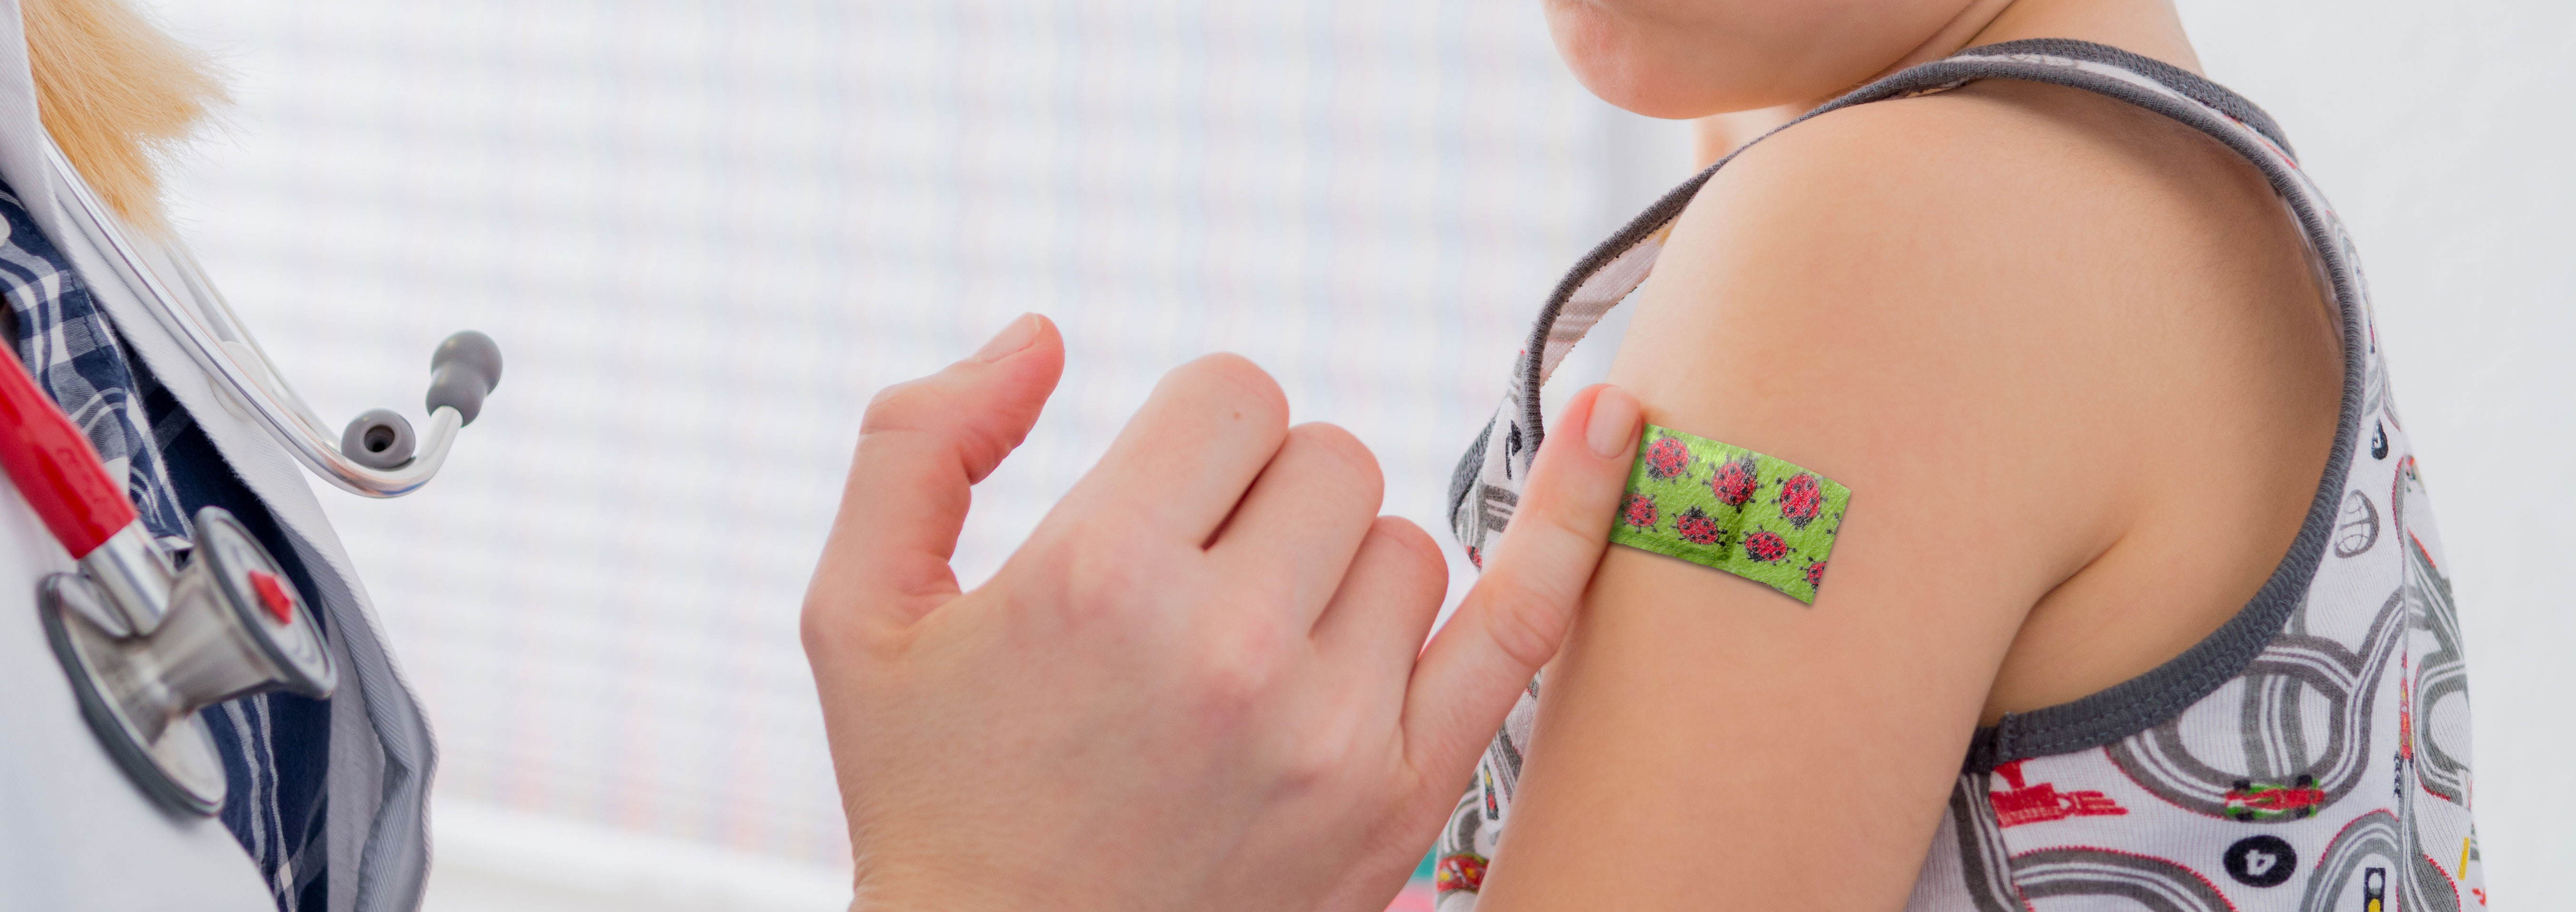 Junge bekommt das injection color Injektionspflaster mit dem Motiv Marienkäfer auf den Arm geklebt